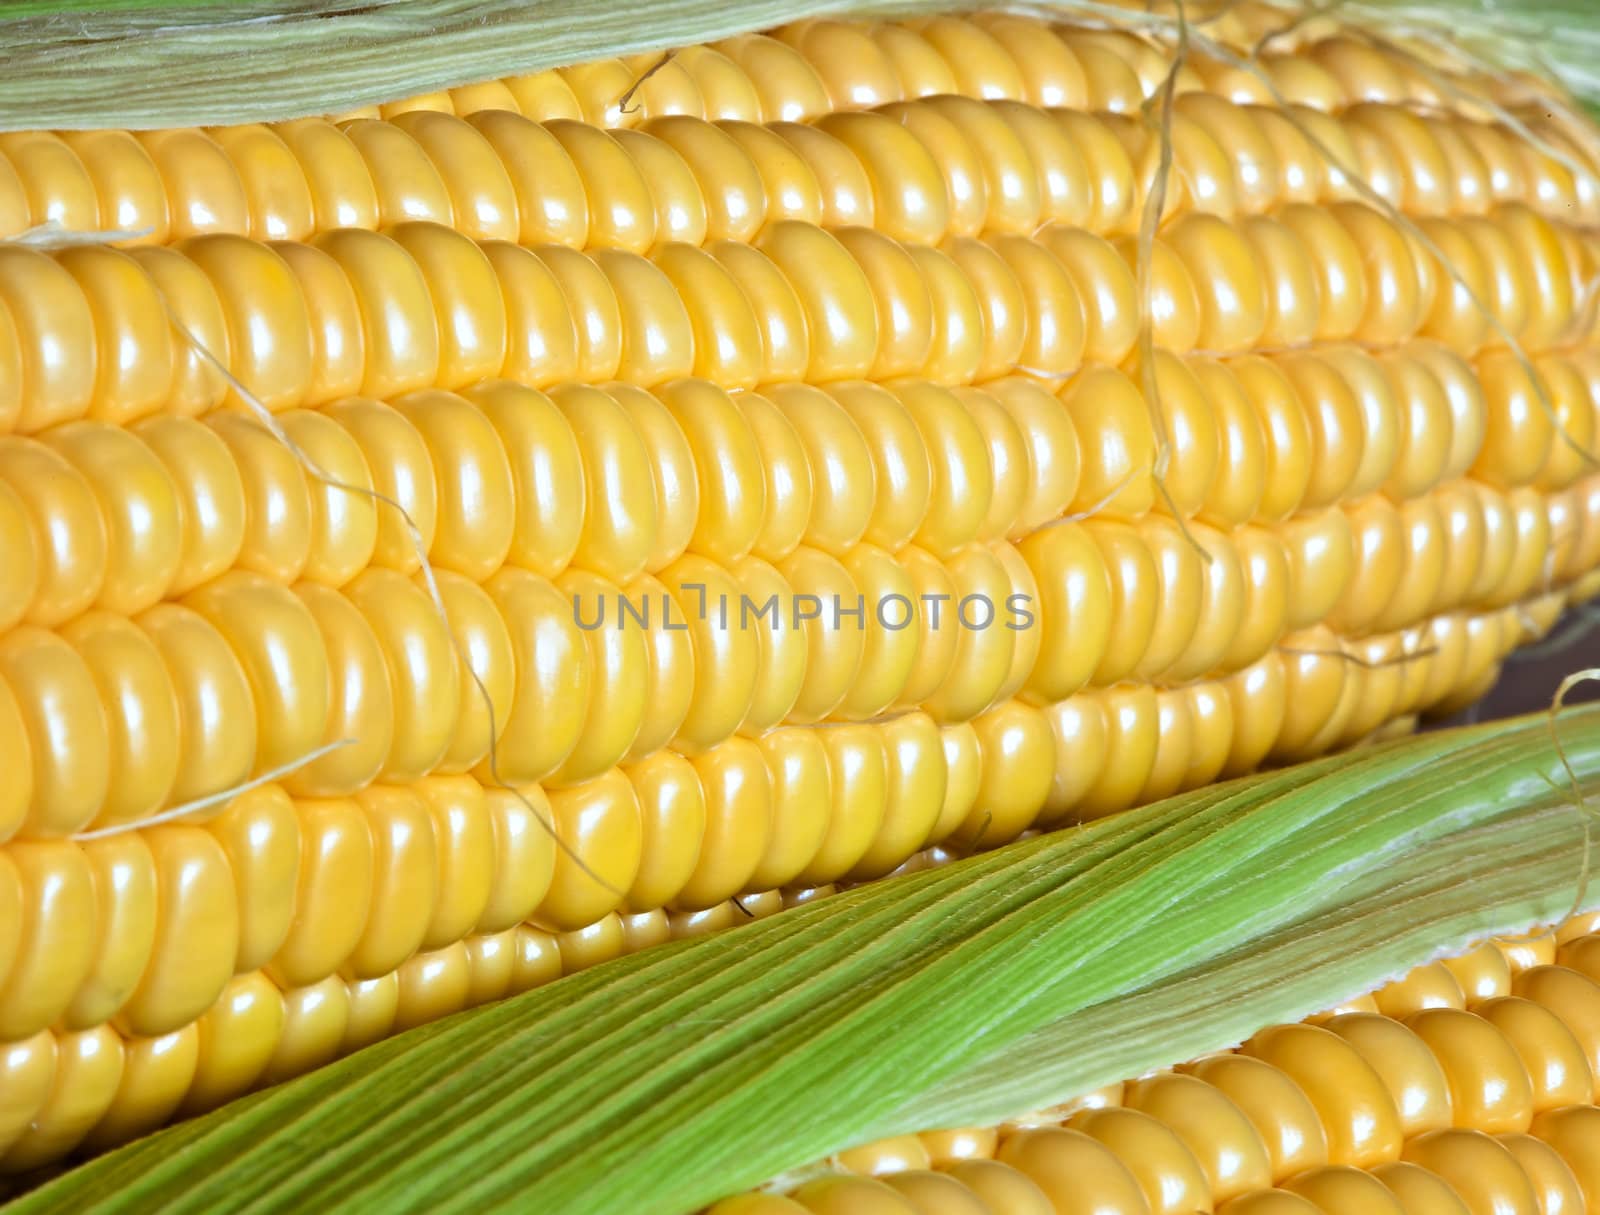 Corn by palinchak